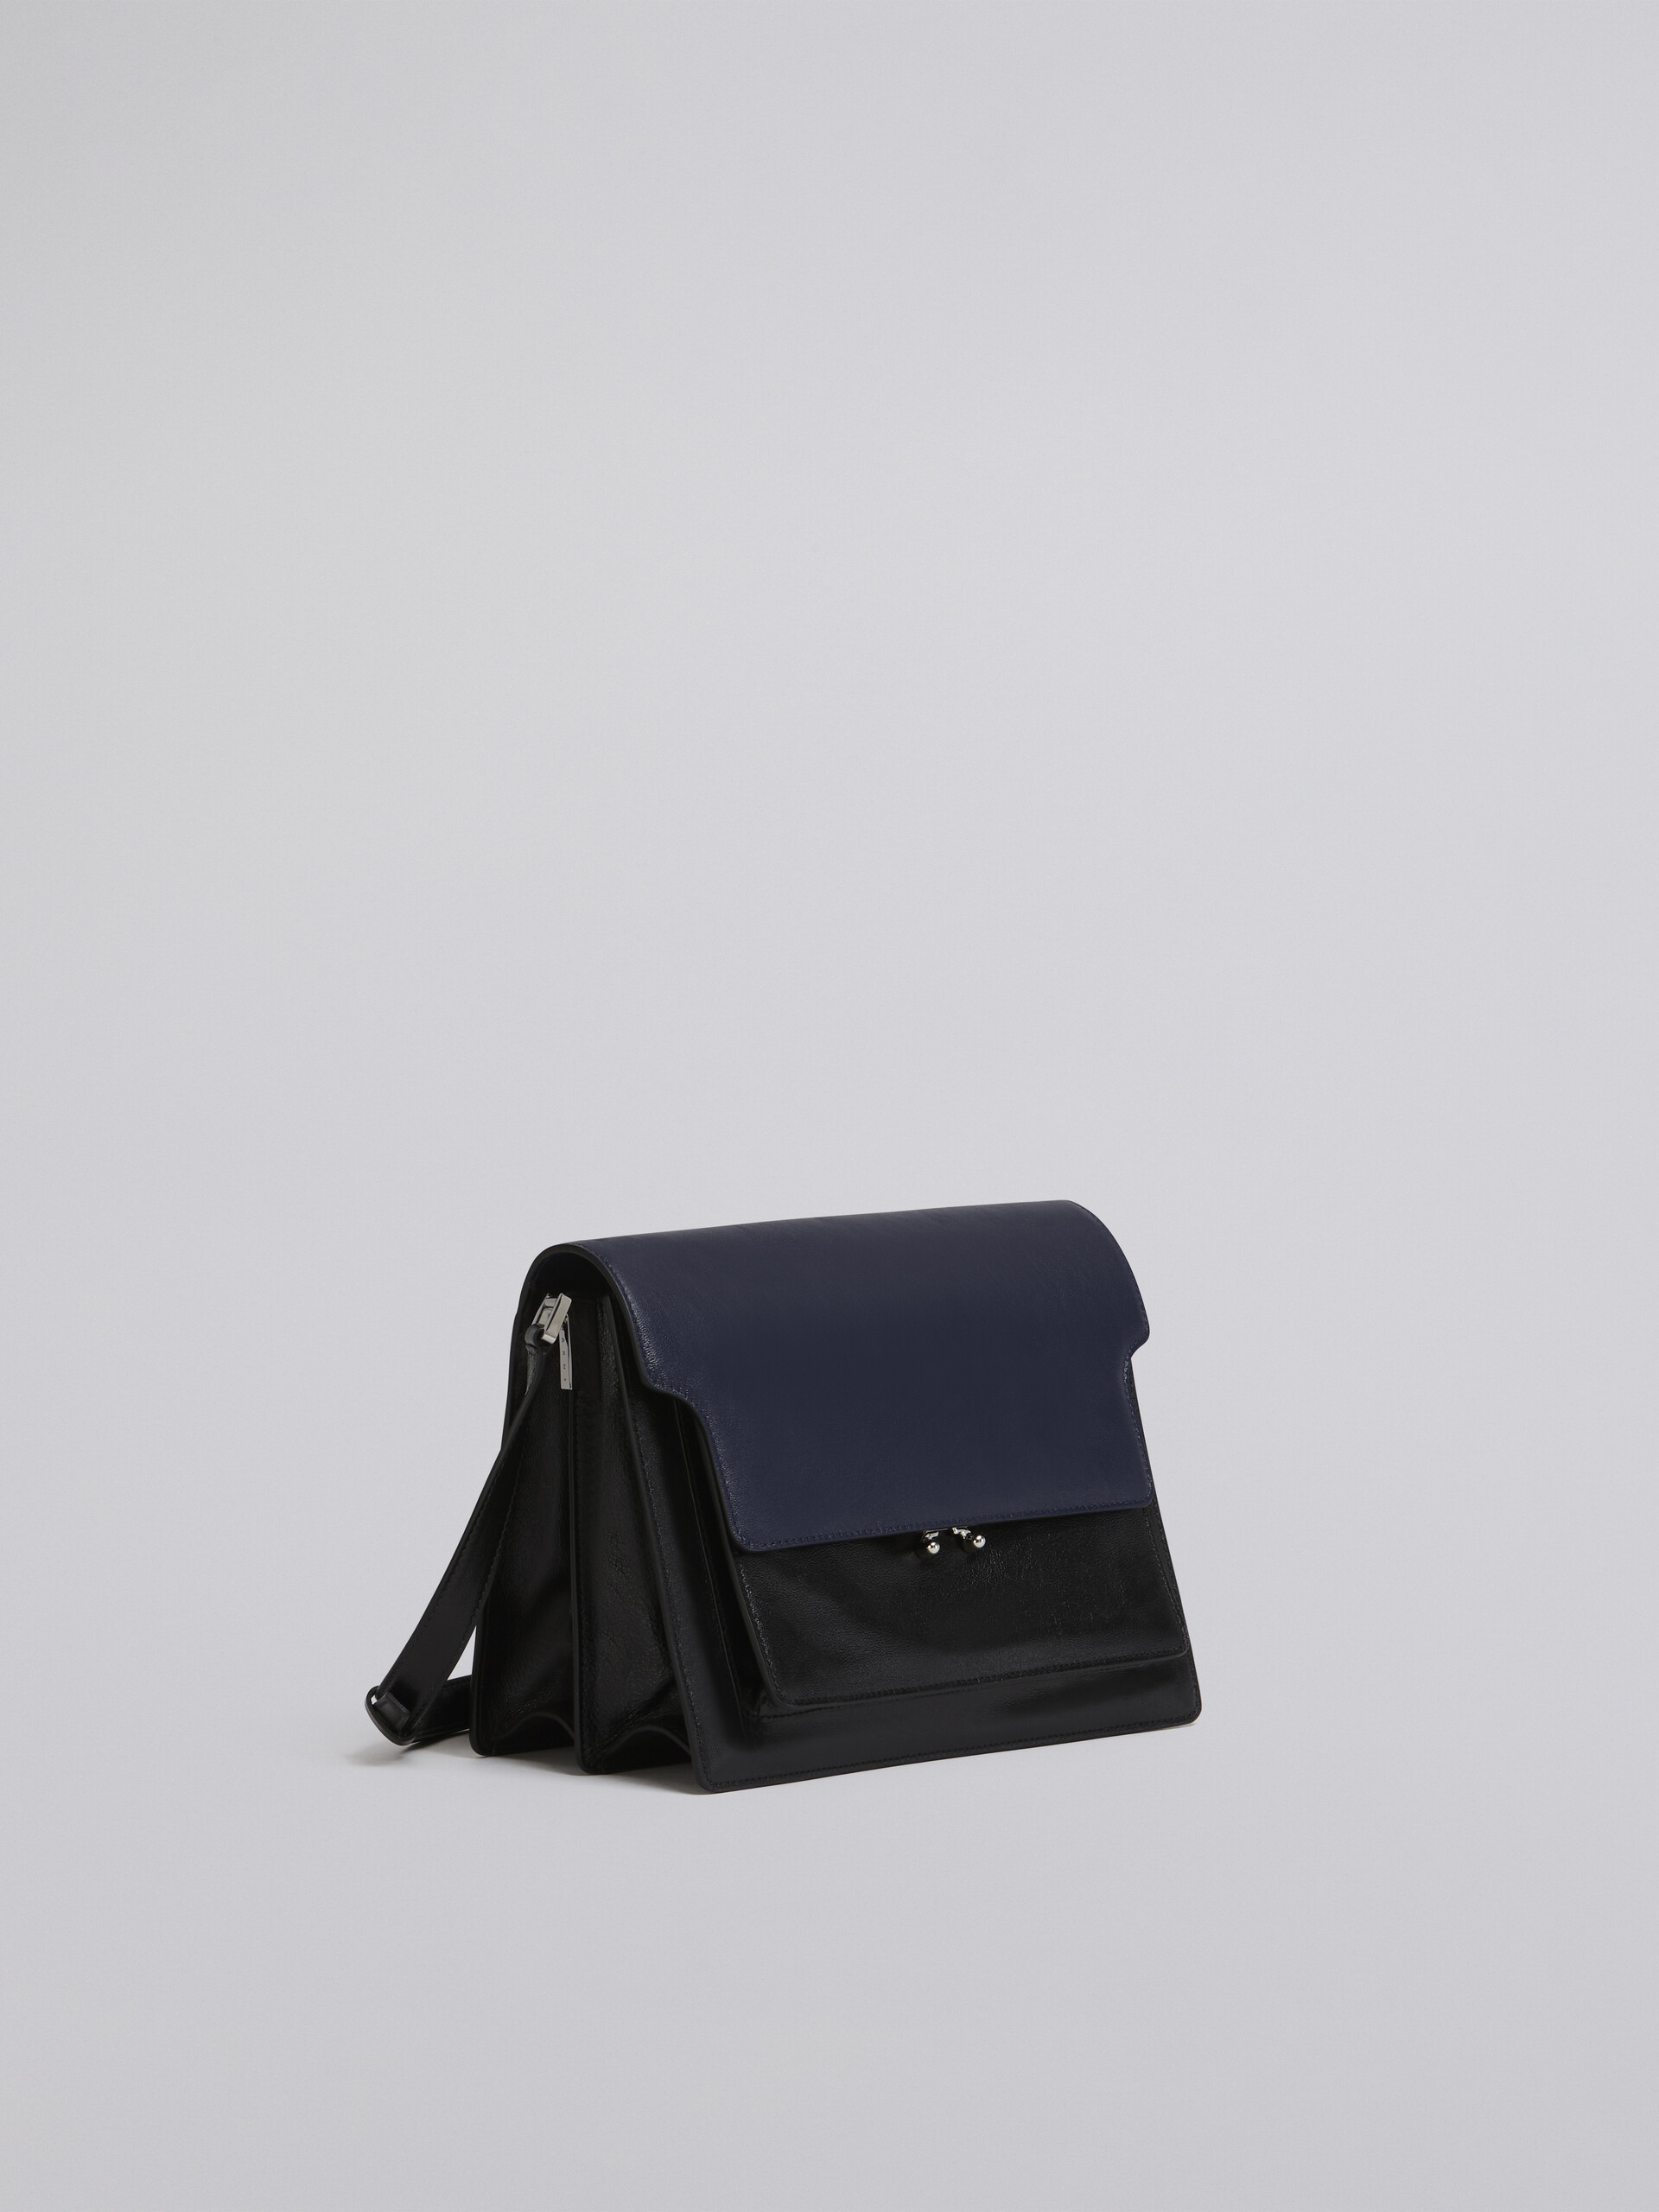 TRUNK SOFT large bag in blue and black leather - Shoulder Bag - Image 6